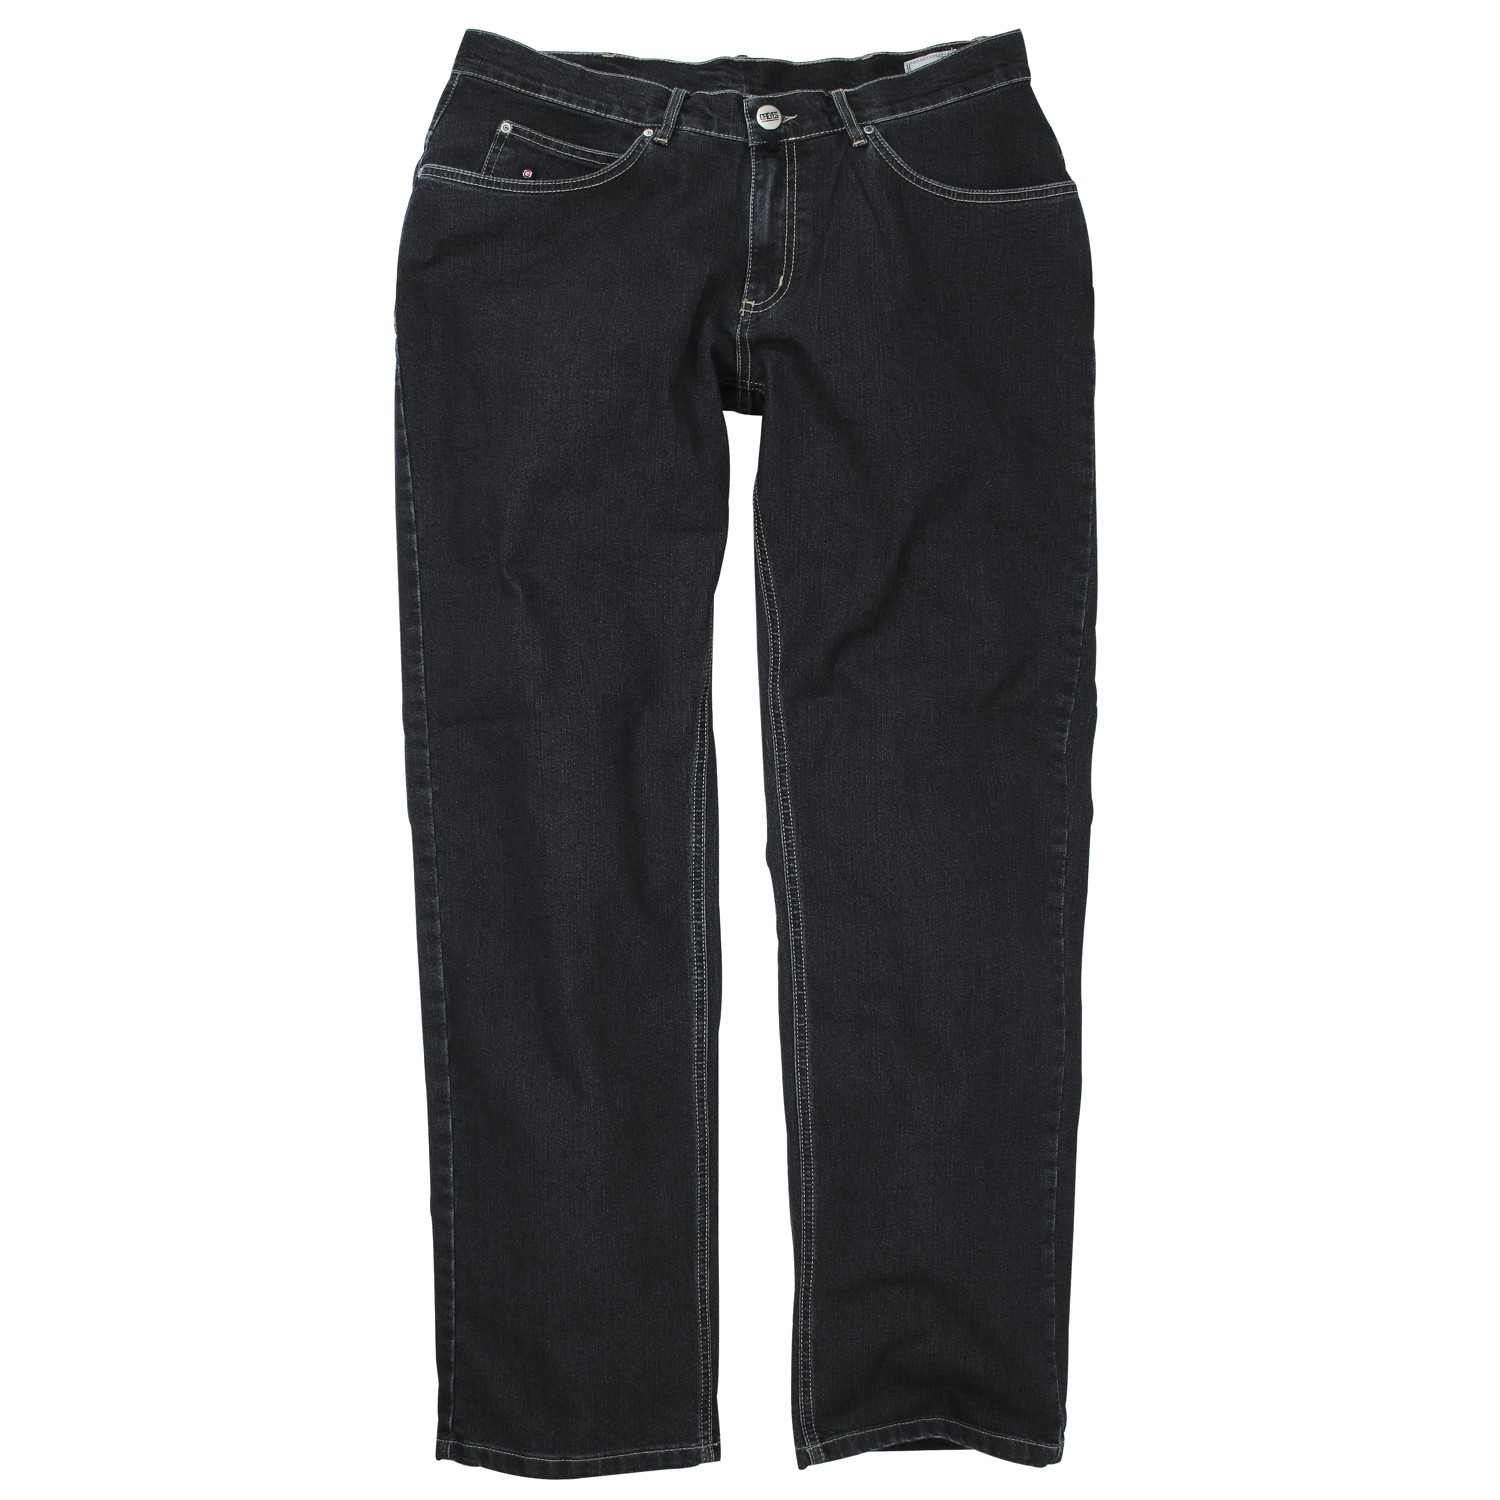 Schwarze Stretch Jeans von Greyes in Übergrößen bis 70